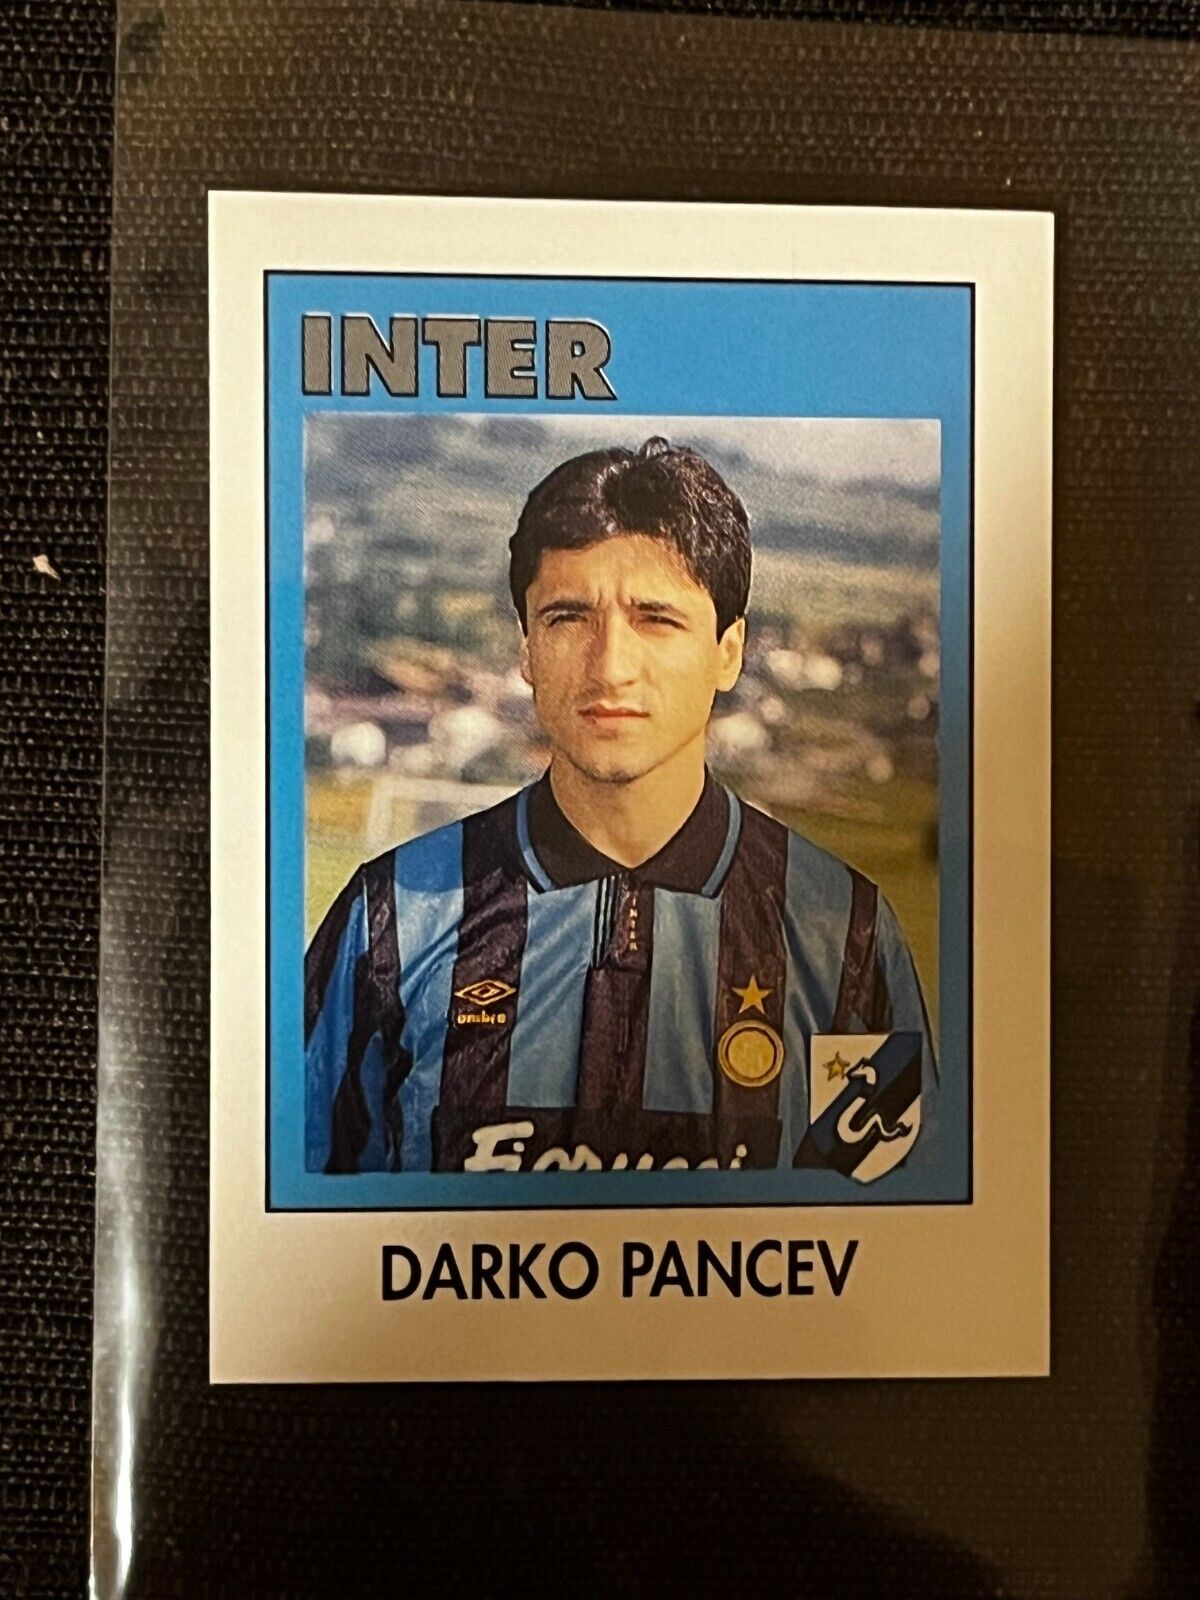 EUROFLASH FOOTBALL STICKER 93 DARKO PANCEV INTER # 140 NO ROOKIE SANDWICHES